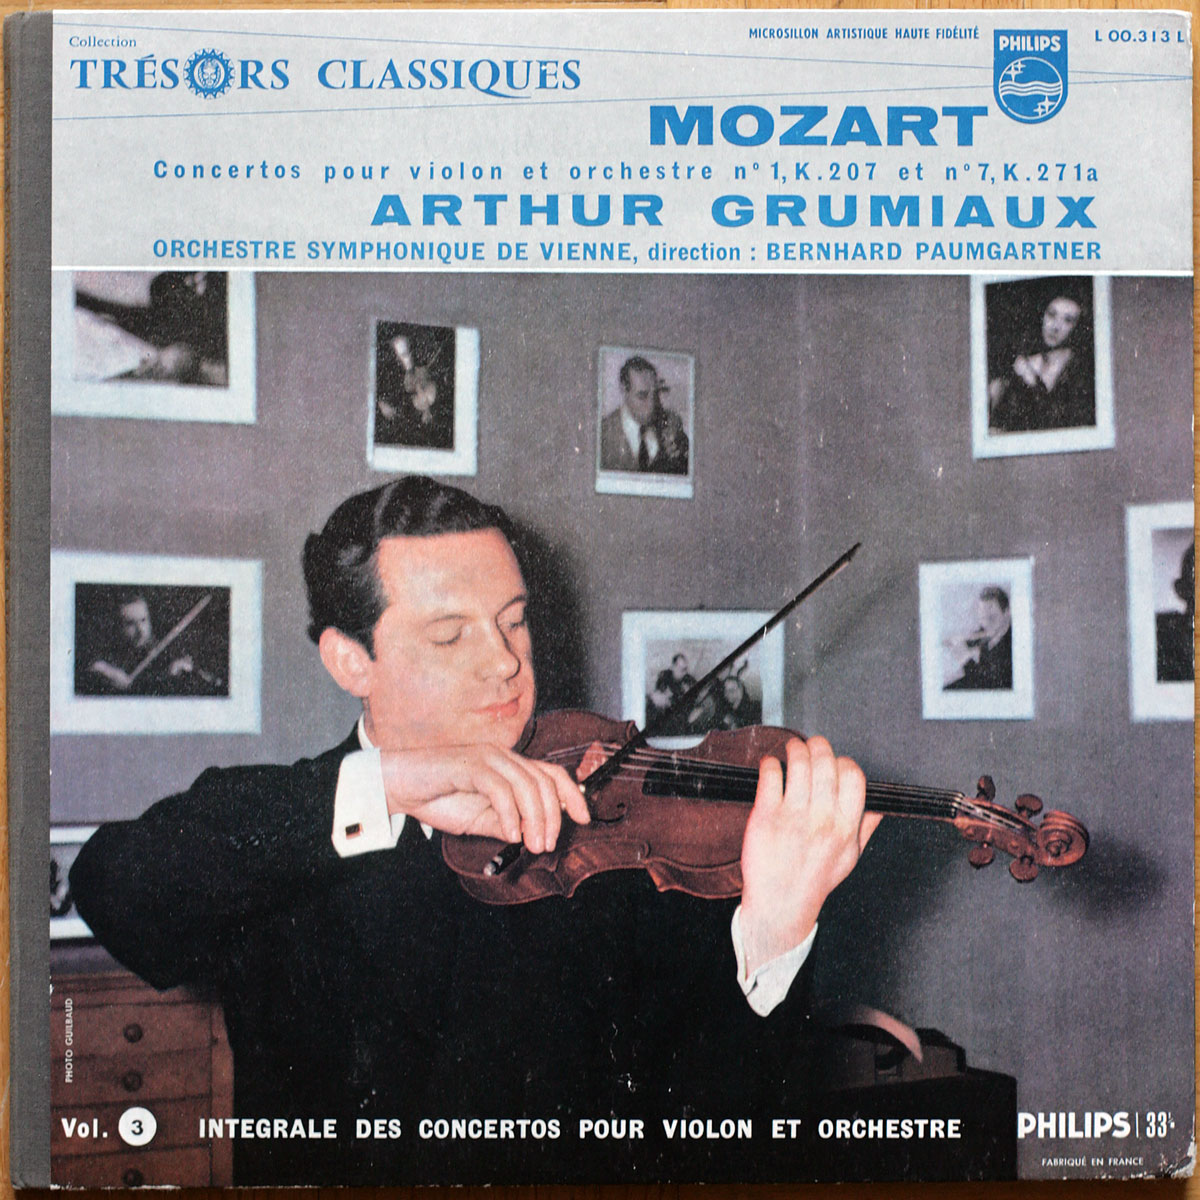 Mozart • Concertos pour violon et orchestre n° 1 – KV 207 & n° 7 – KV 271a • Philips Minigroove L 001 313 L • Arthur Grumiaux • Wiener Symphoniker • Bernhard Paumgartner